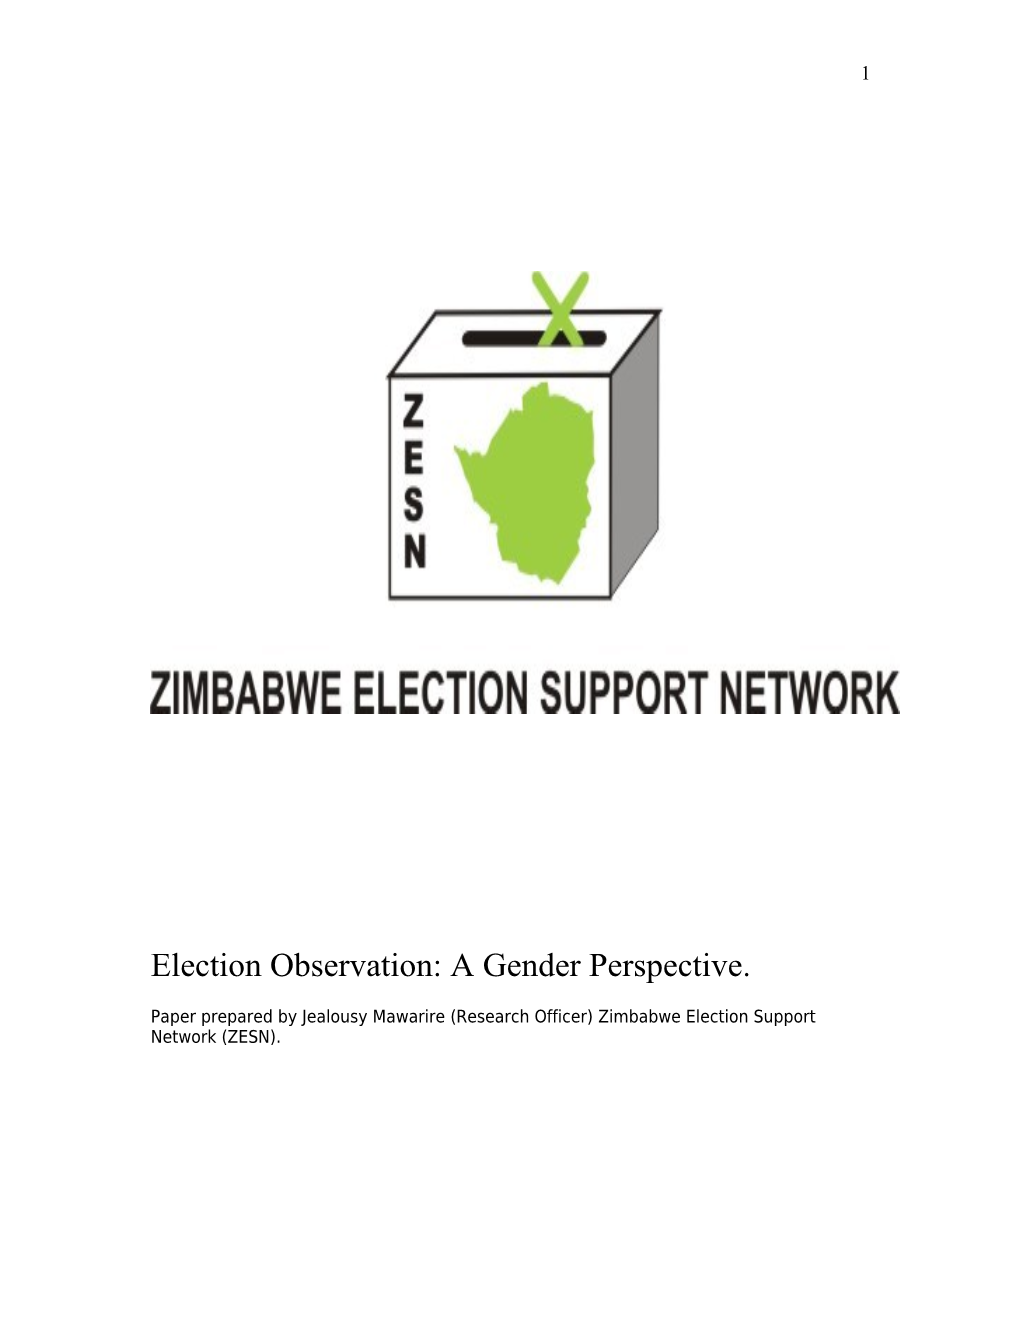 Election Observation: a Gender Perspective